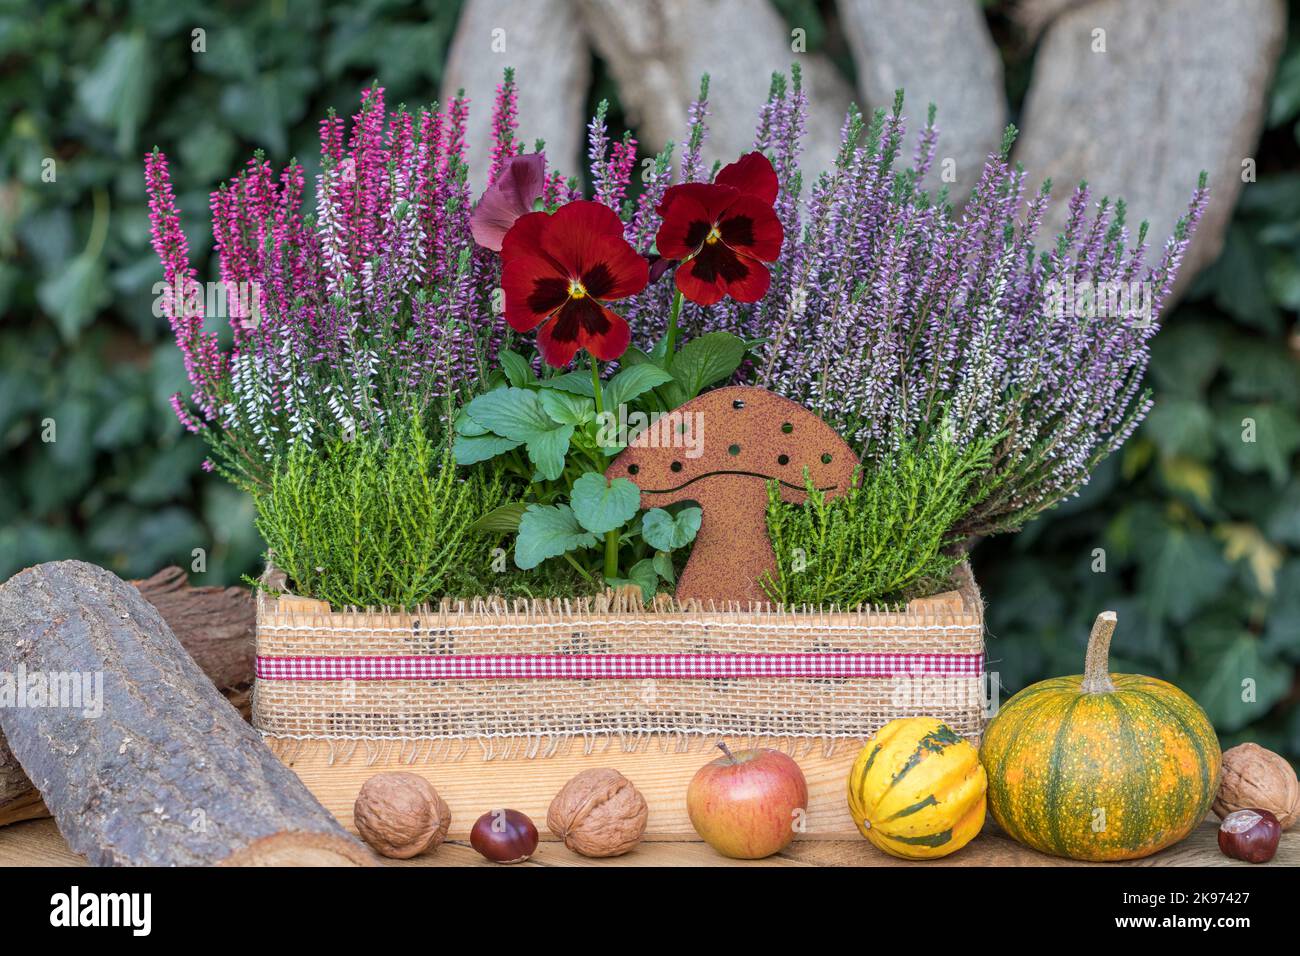 fiore di viola rossa, fiori di erica e arbusto veronika in scatola di legno in giardino Foto Stock